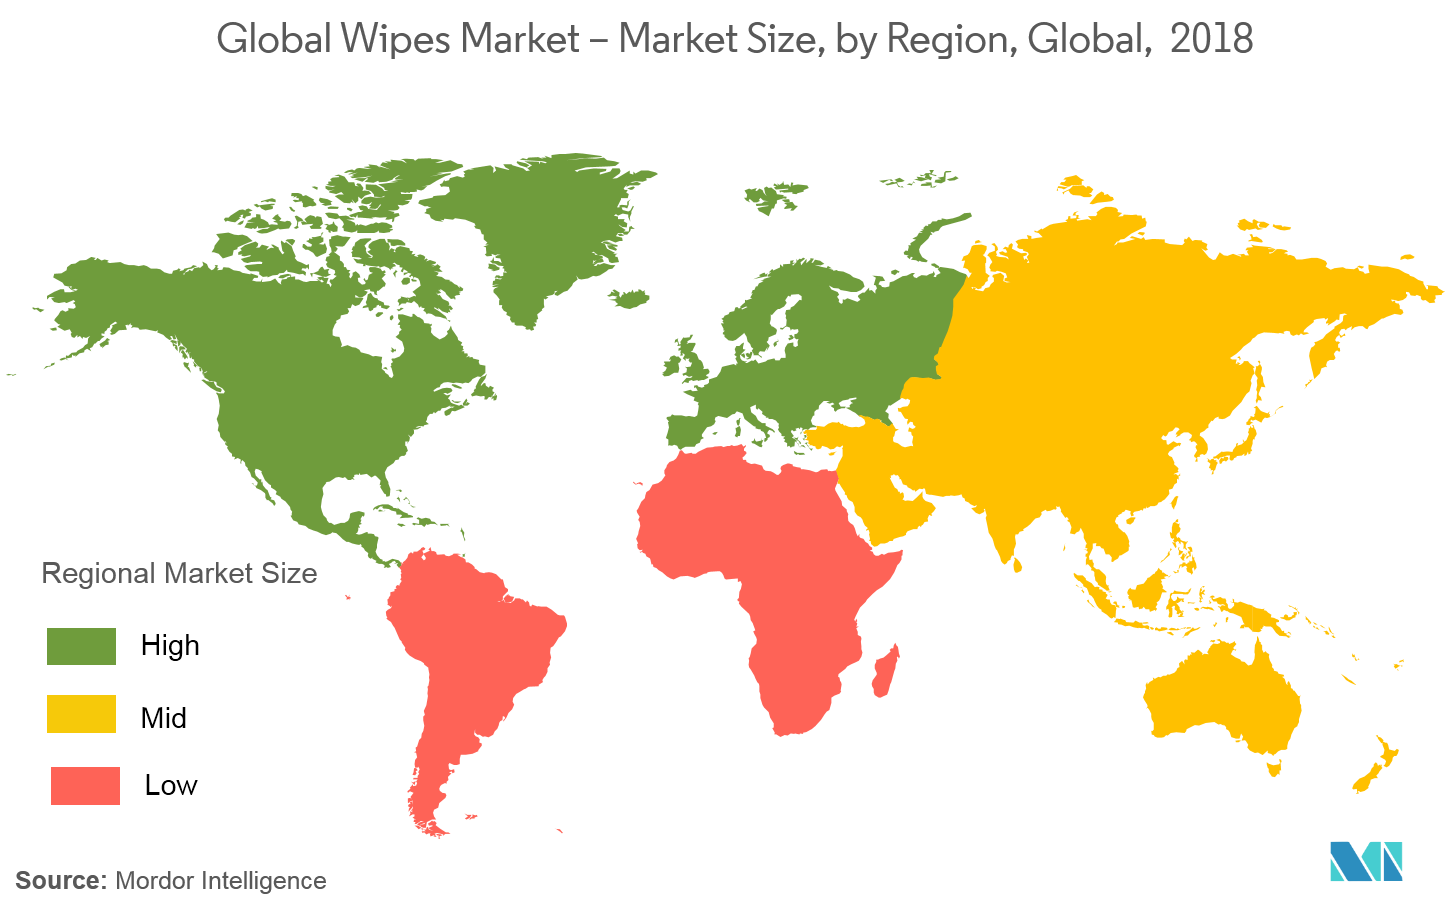 Global Wipes Market - Market Size, by Region, Global, 2018